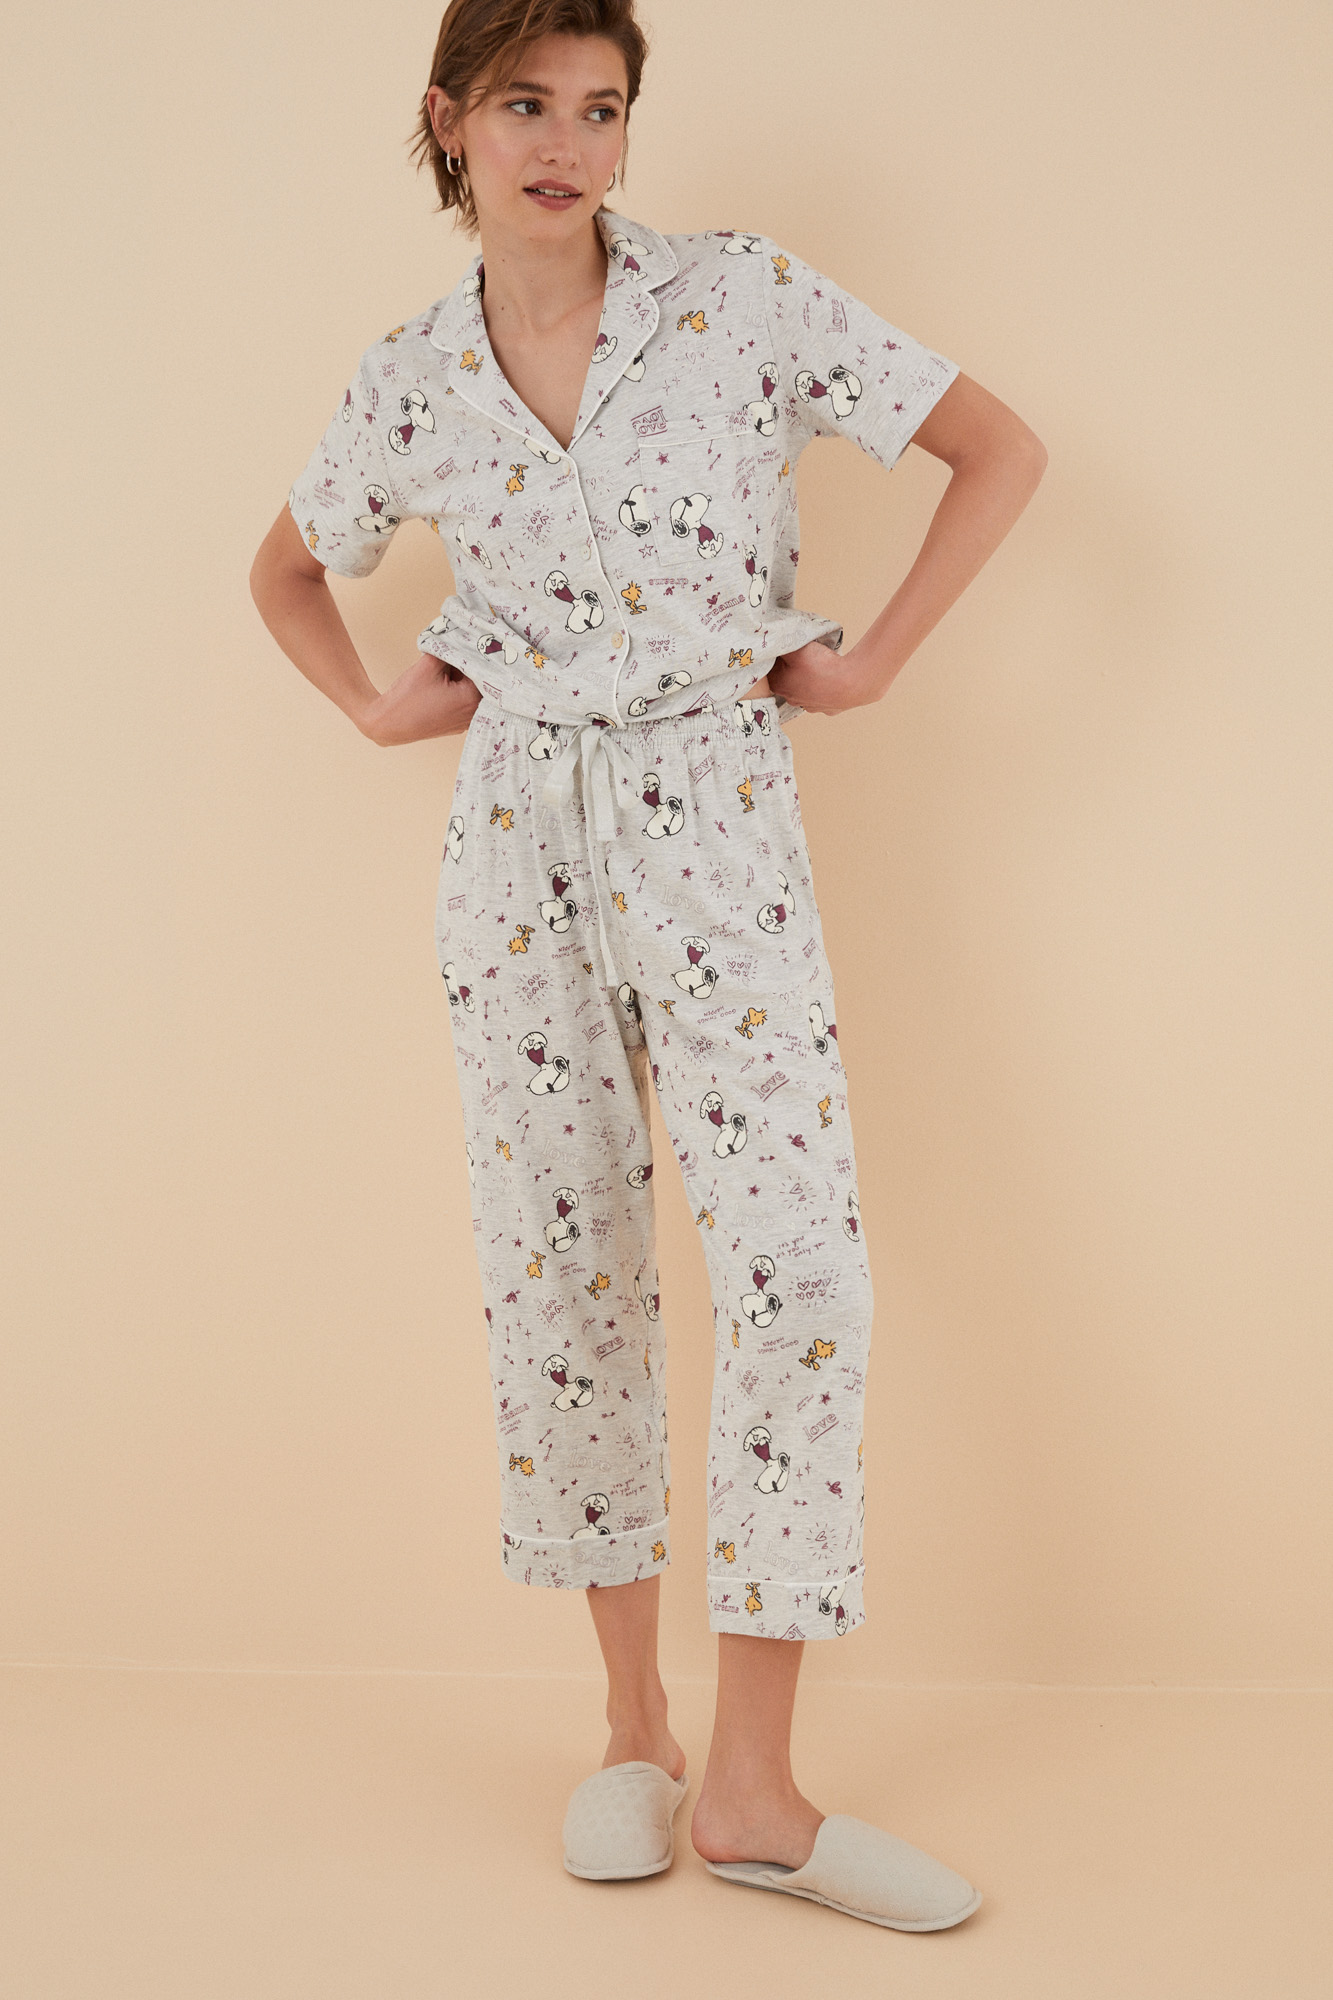 Pijama camisero 100% algodón Snoopy | Ropa de dormir de mujer y homewear | WomenSecret